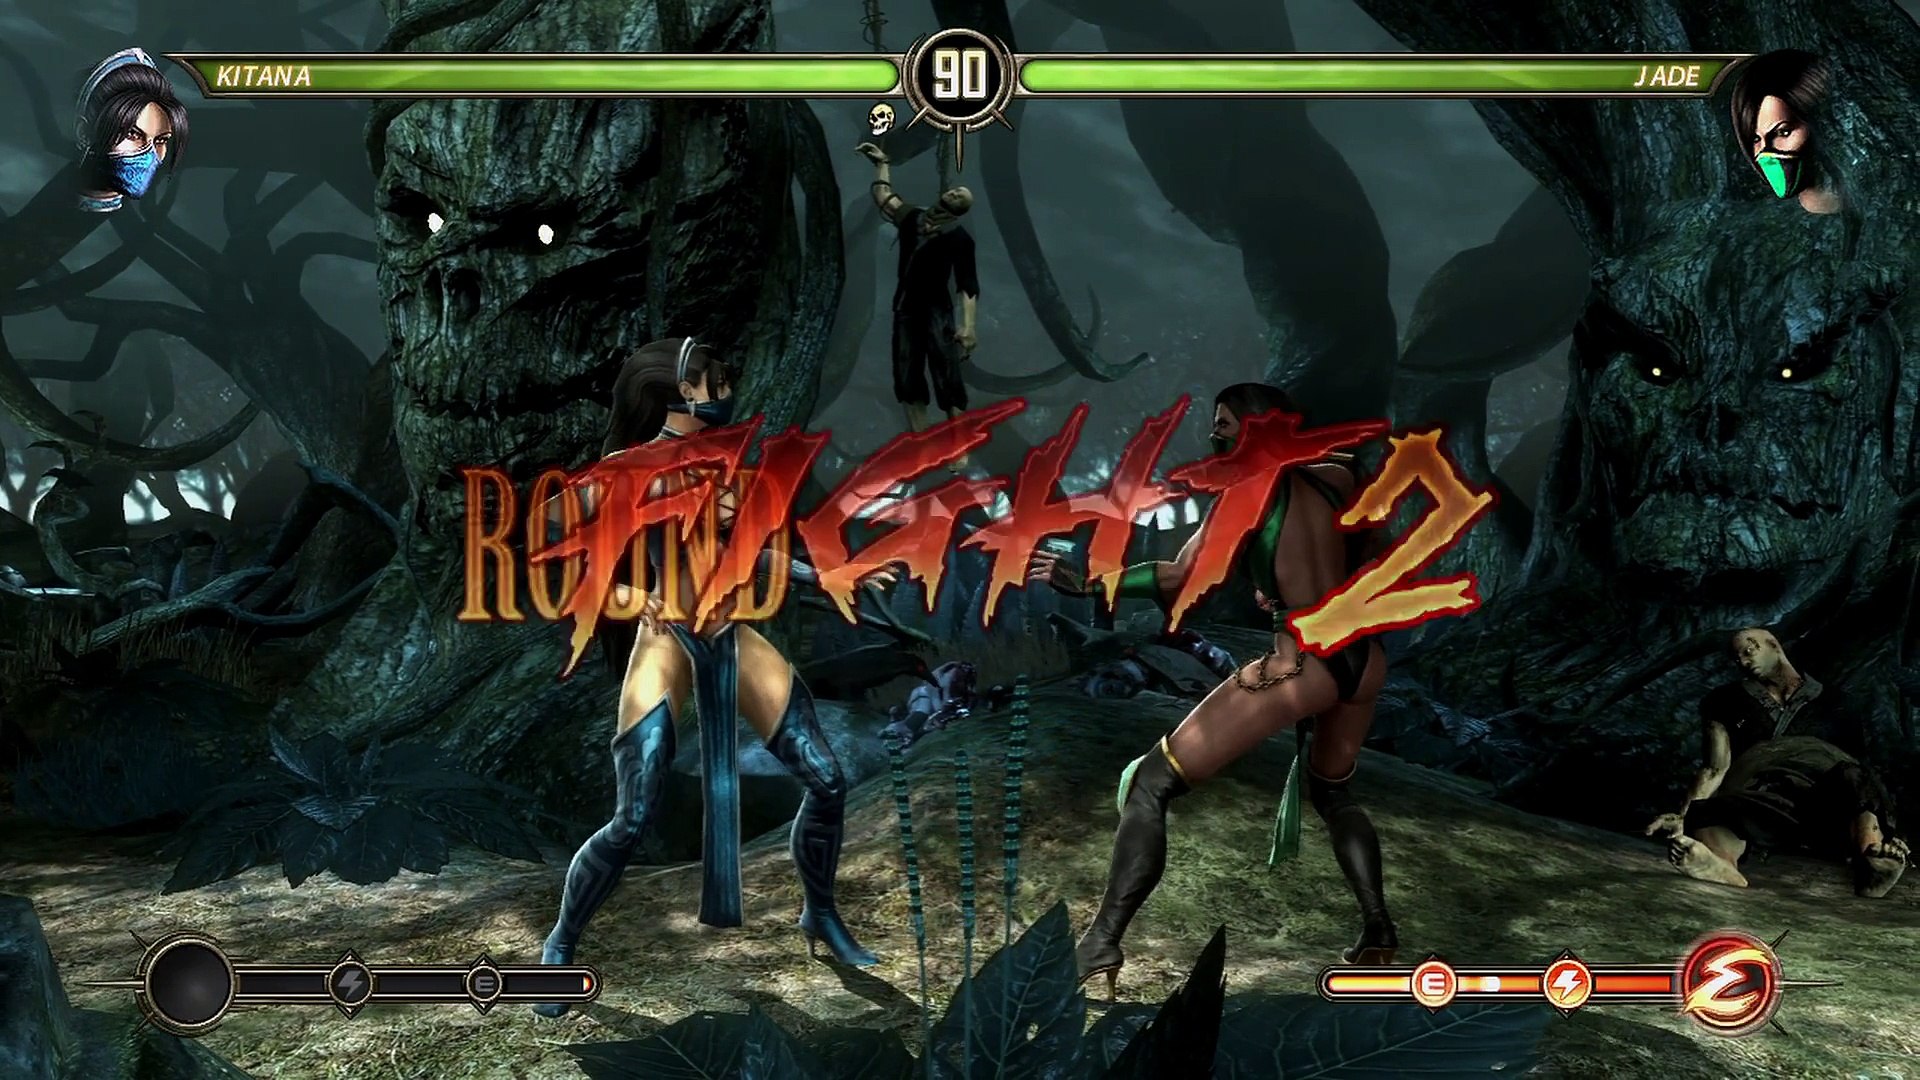 Kano Fatalities & Babality - Mortal Kombat 9 (2011) - 1080p 60fps 